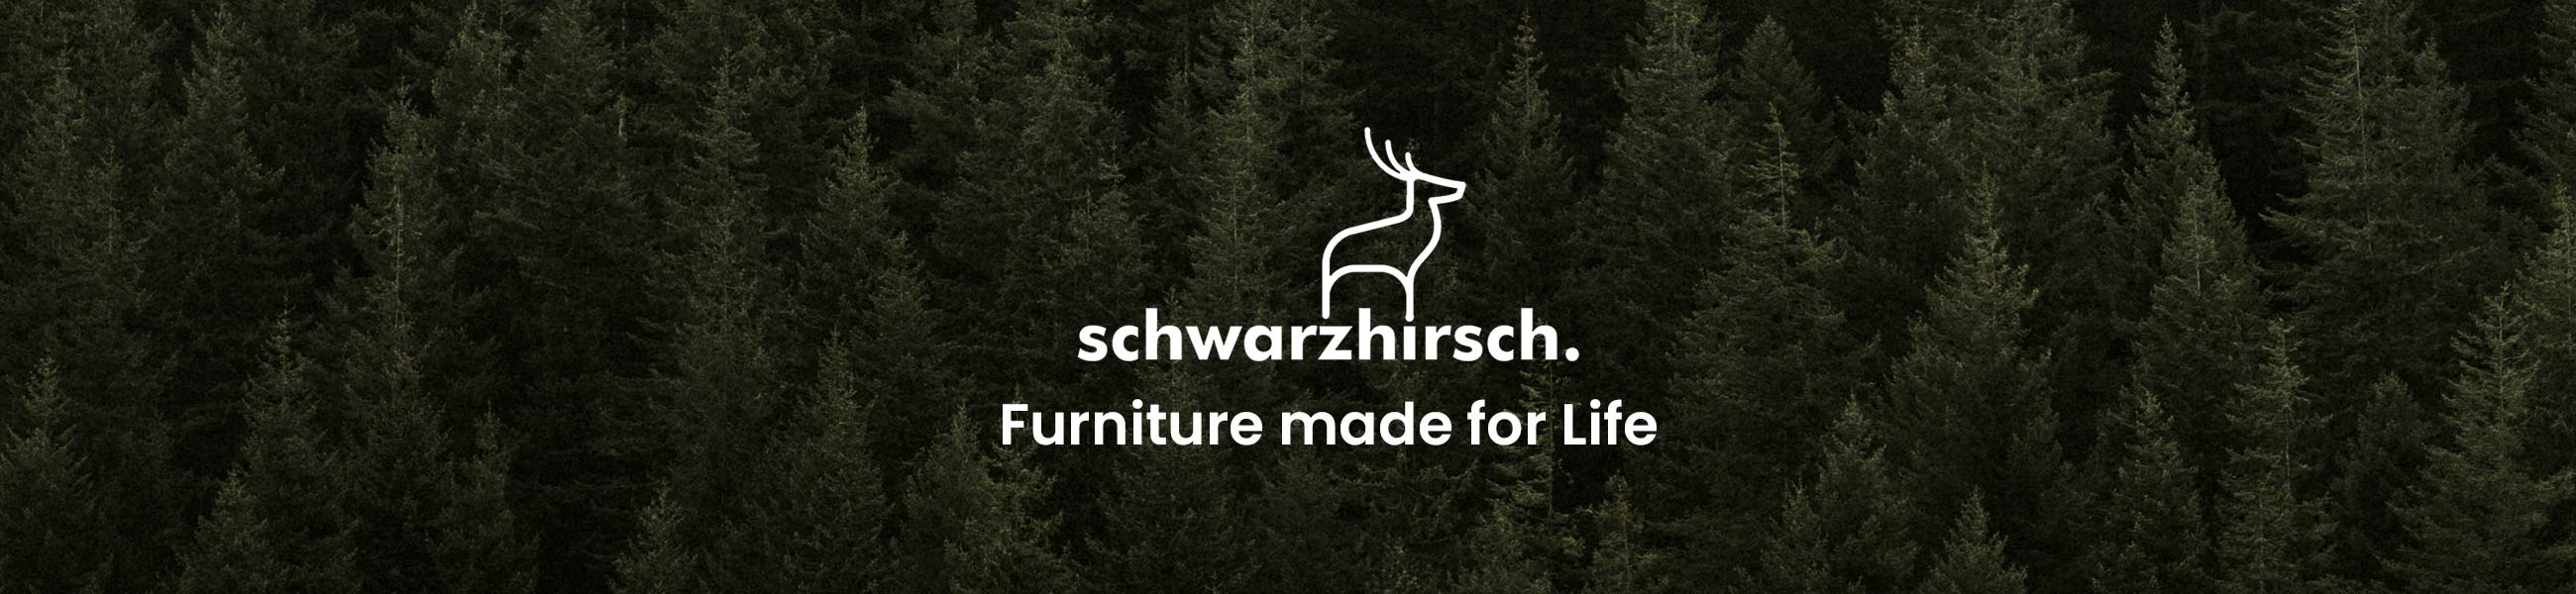 schwarzhirsch. furniture made for life.